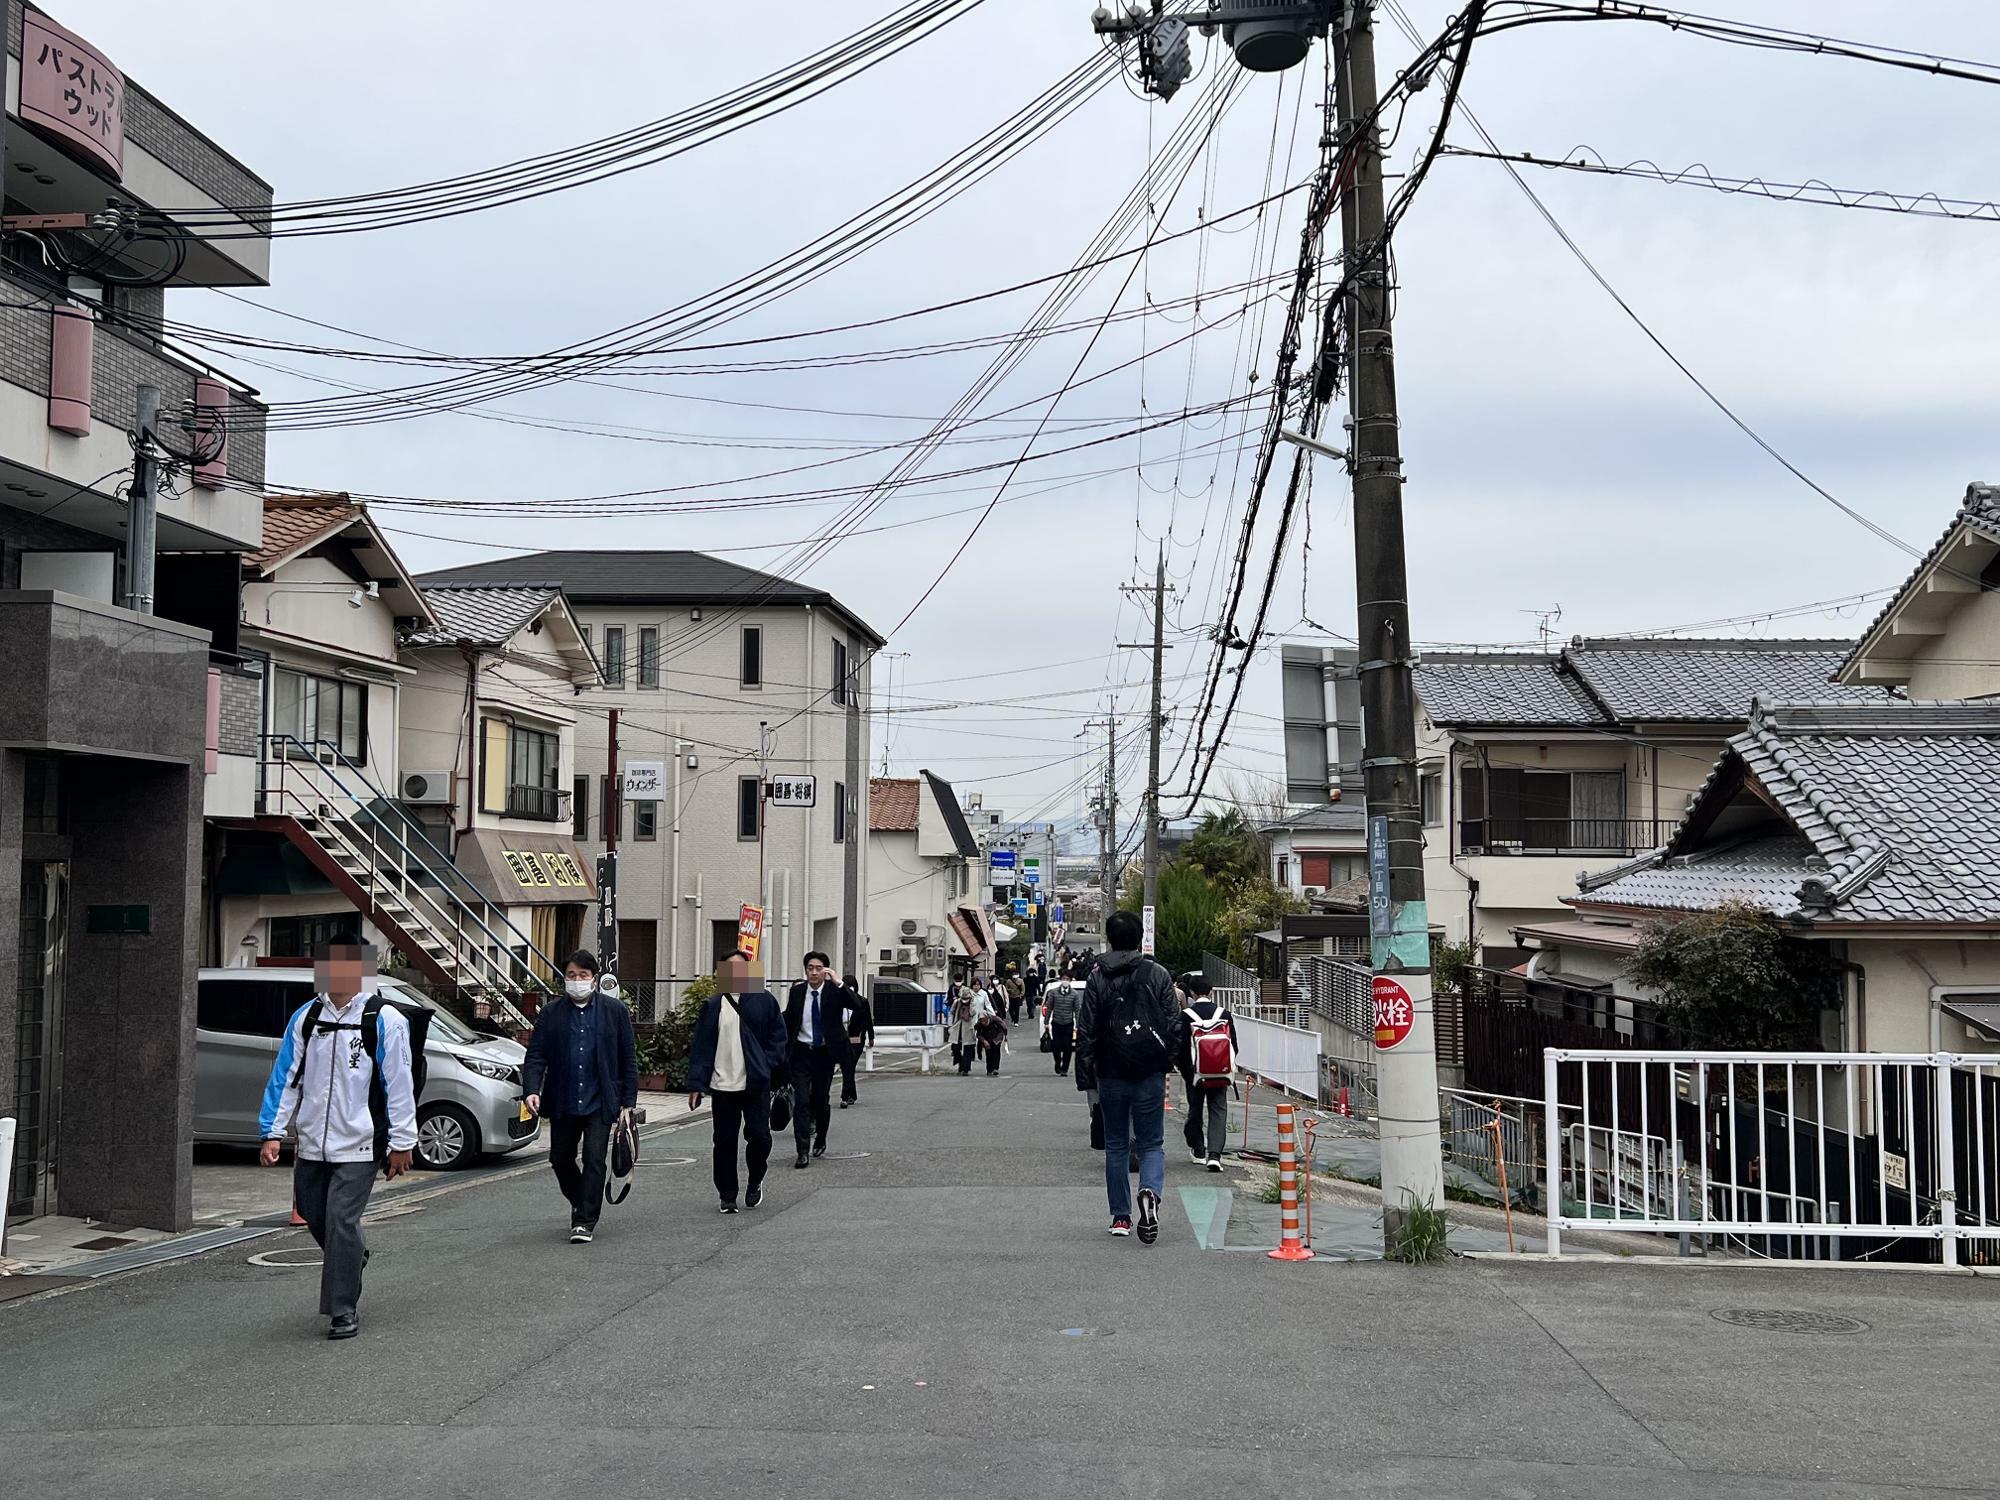 JR河内磐船駅と京阪河内森駅の間をつなぐ道。乗り継ぎ客はここを歩きます